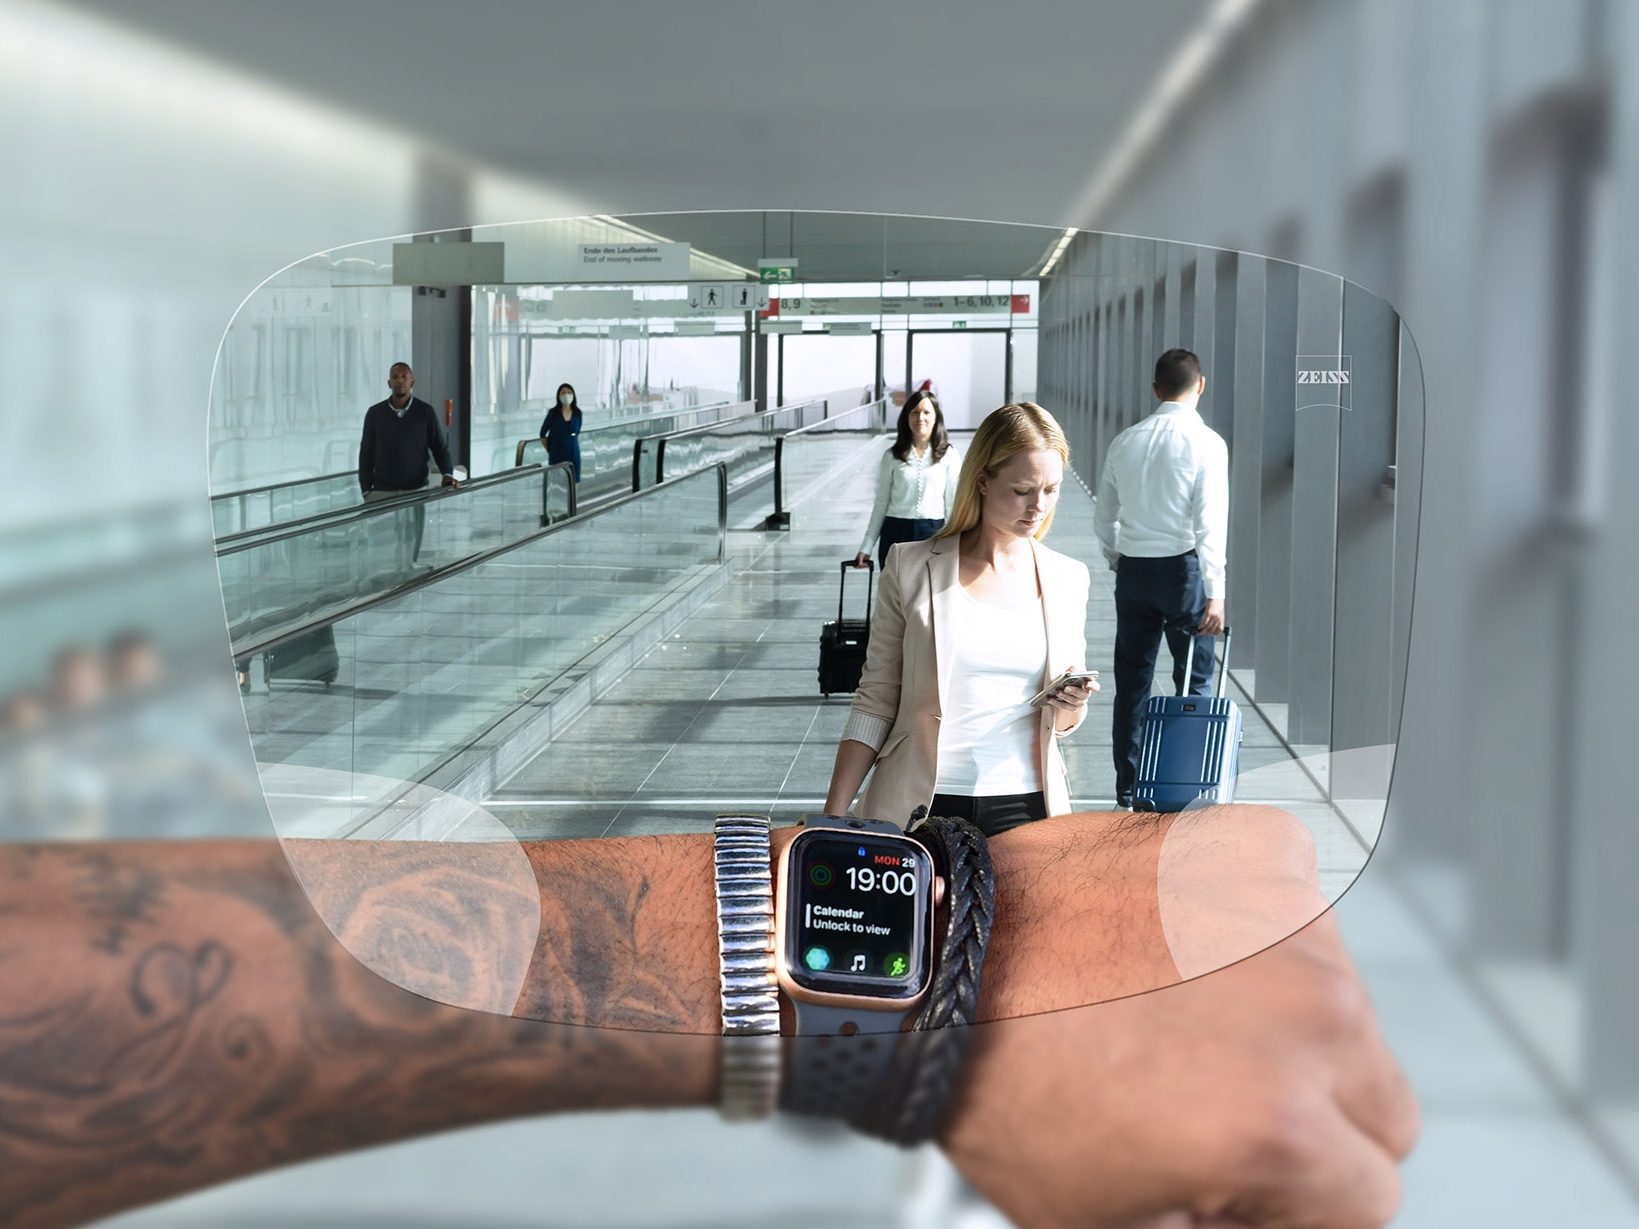 자이스 스마트라이프 디지털 렌즈를 통해 시계를 보는 사람. 배경에는 사람들이 에스컬레이터를 타고 여행 가방을 밀고 있는 전형적인 공항 상황이 보인다. 